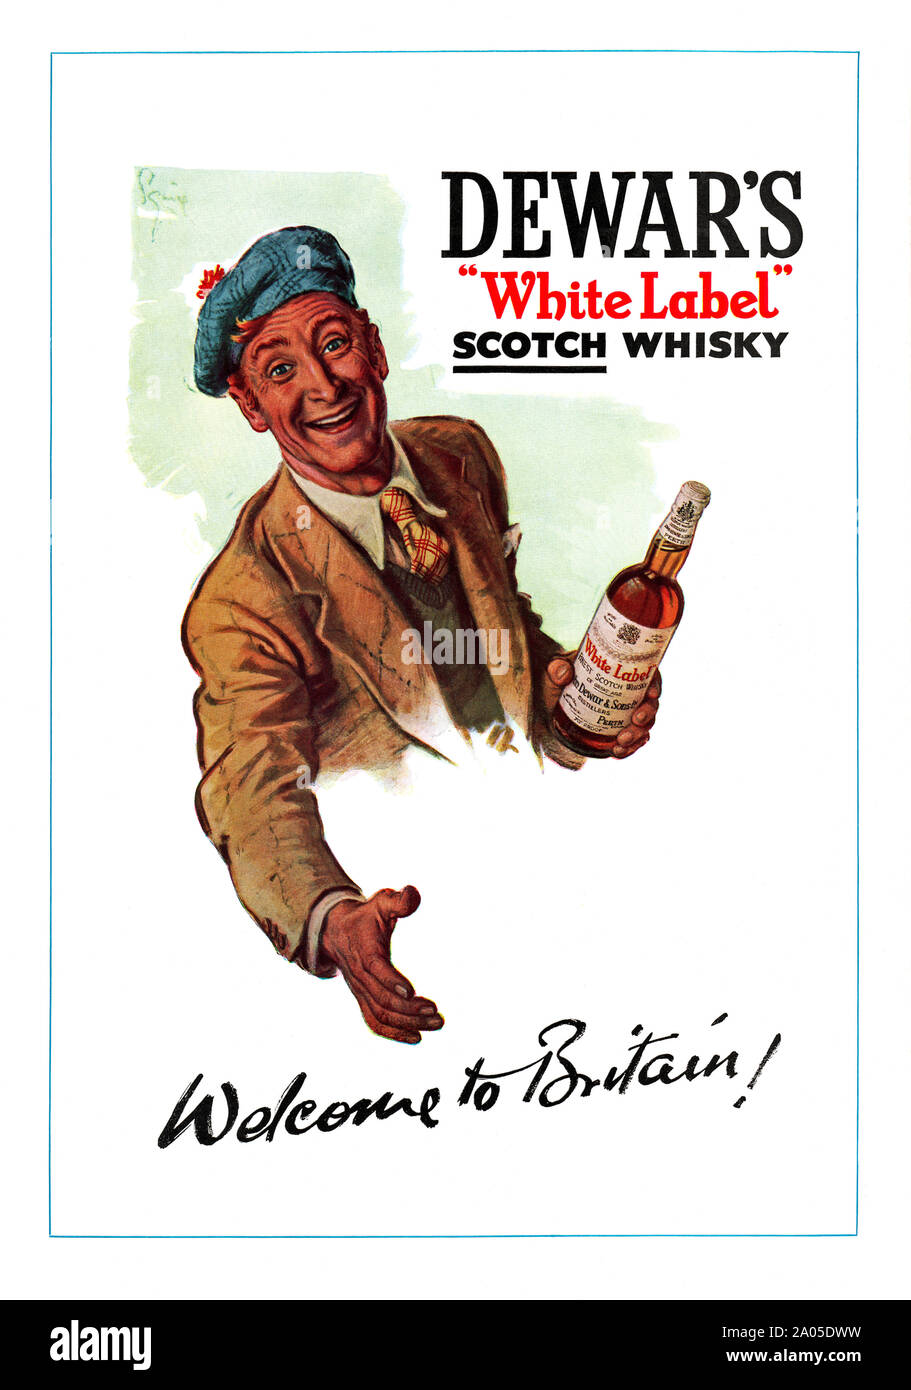 Annuncio pubblicitario per il Dewar's "White Label' scotch whisky, 1951. La figura mostra uno scozzese tenendo fuori un accogliente mano. Indossa un tam o' shanter hat, un nome dato al tradizionale cofano scozzese indossata da uomini. Il nome deriva da Tam o Shanter", l'eroe eponimo del 1790 Robert Burns poesia. Dewar's è una marca di Scotch whisky blended ora posseduta dalla Bacardi, che rivendica "White Label' per essere il top-vendita blended Scotch negli Stati Uniti. Foto Stock